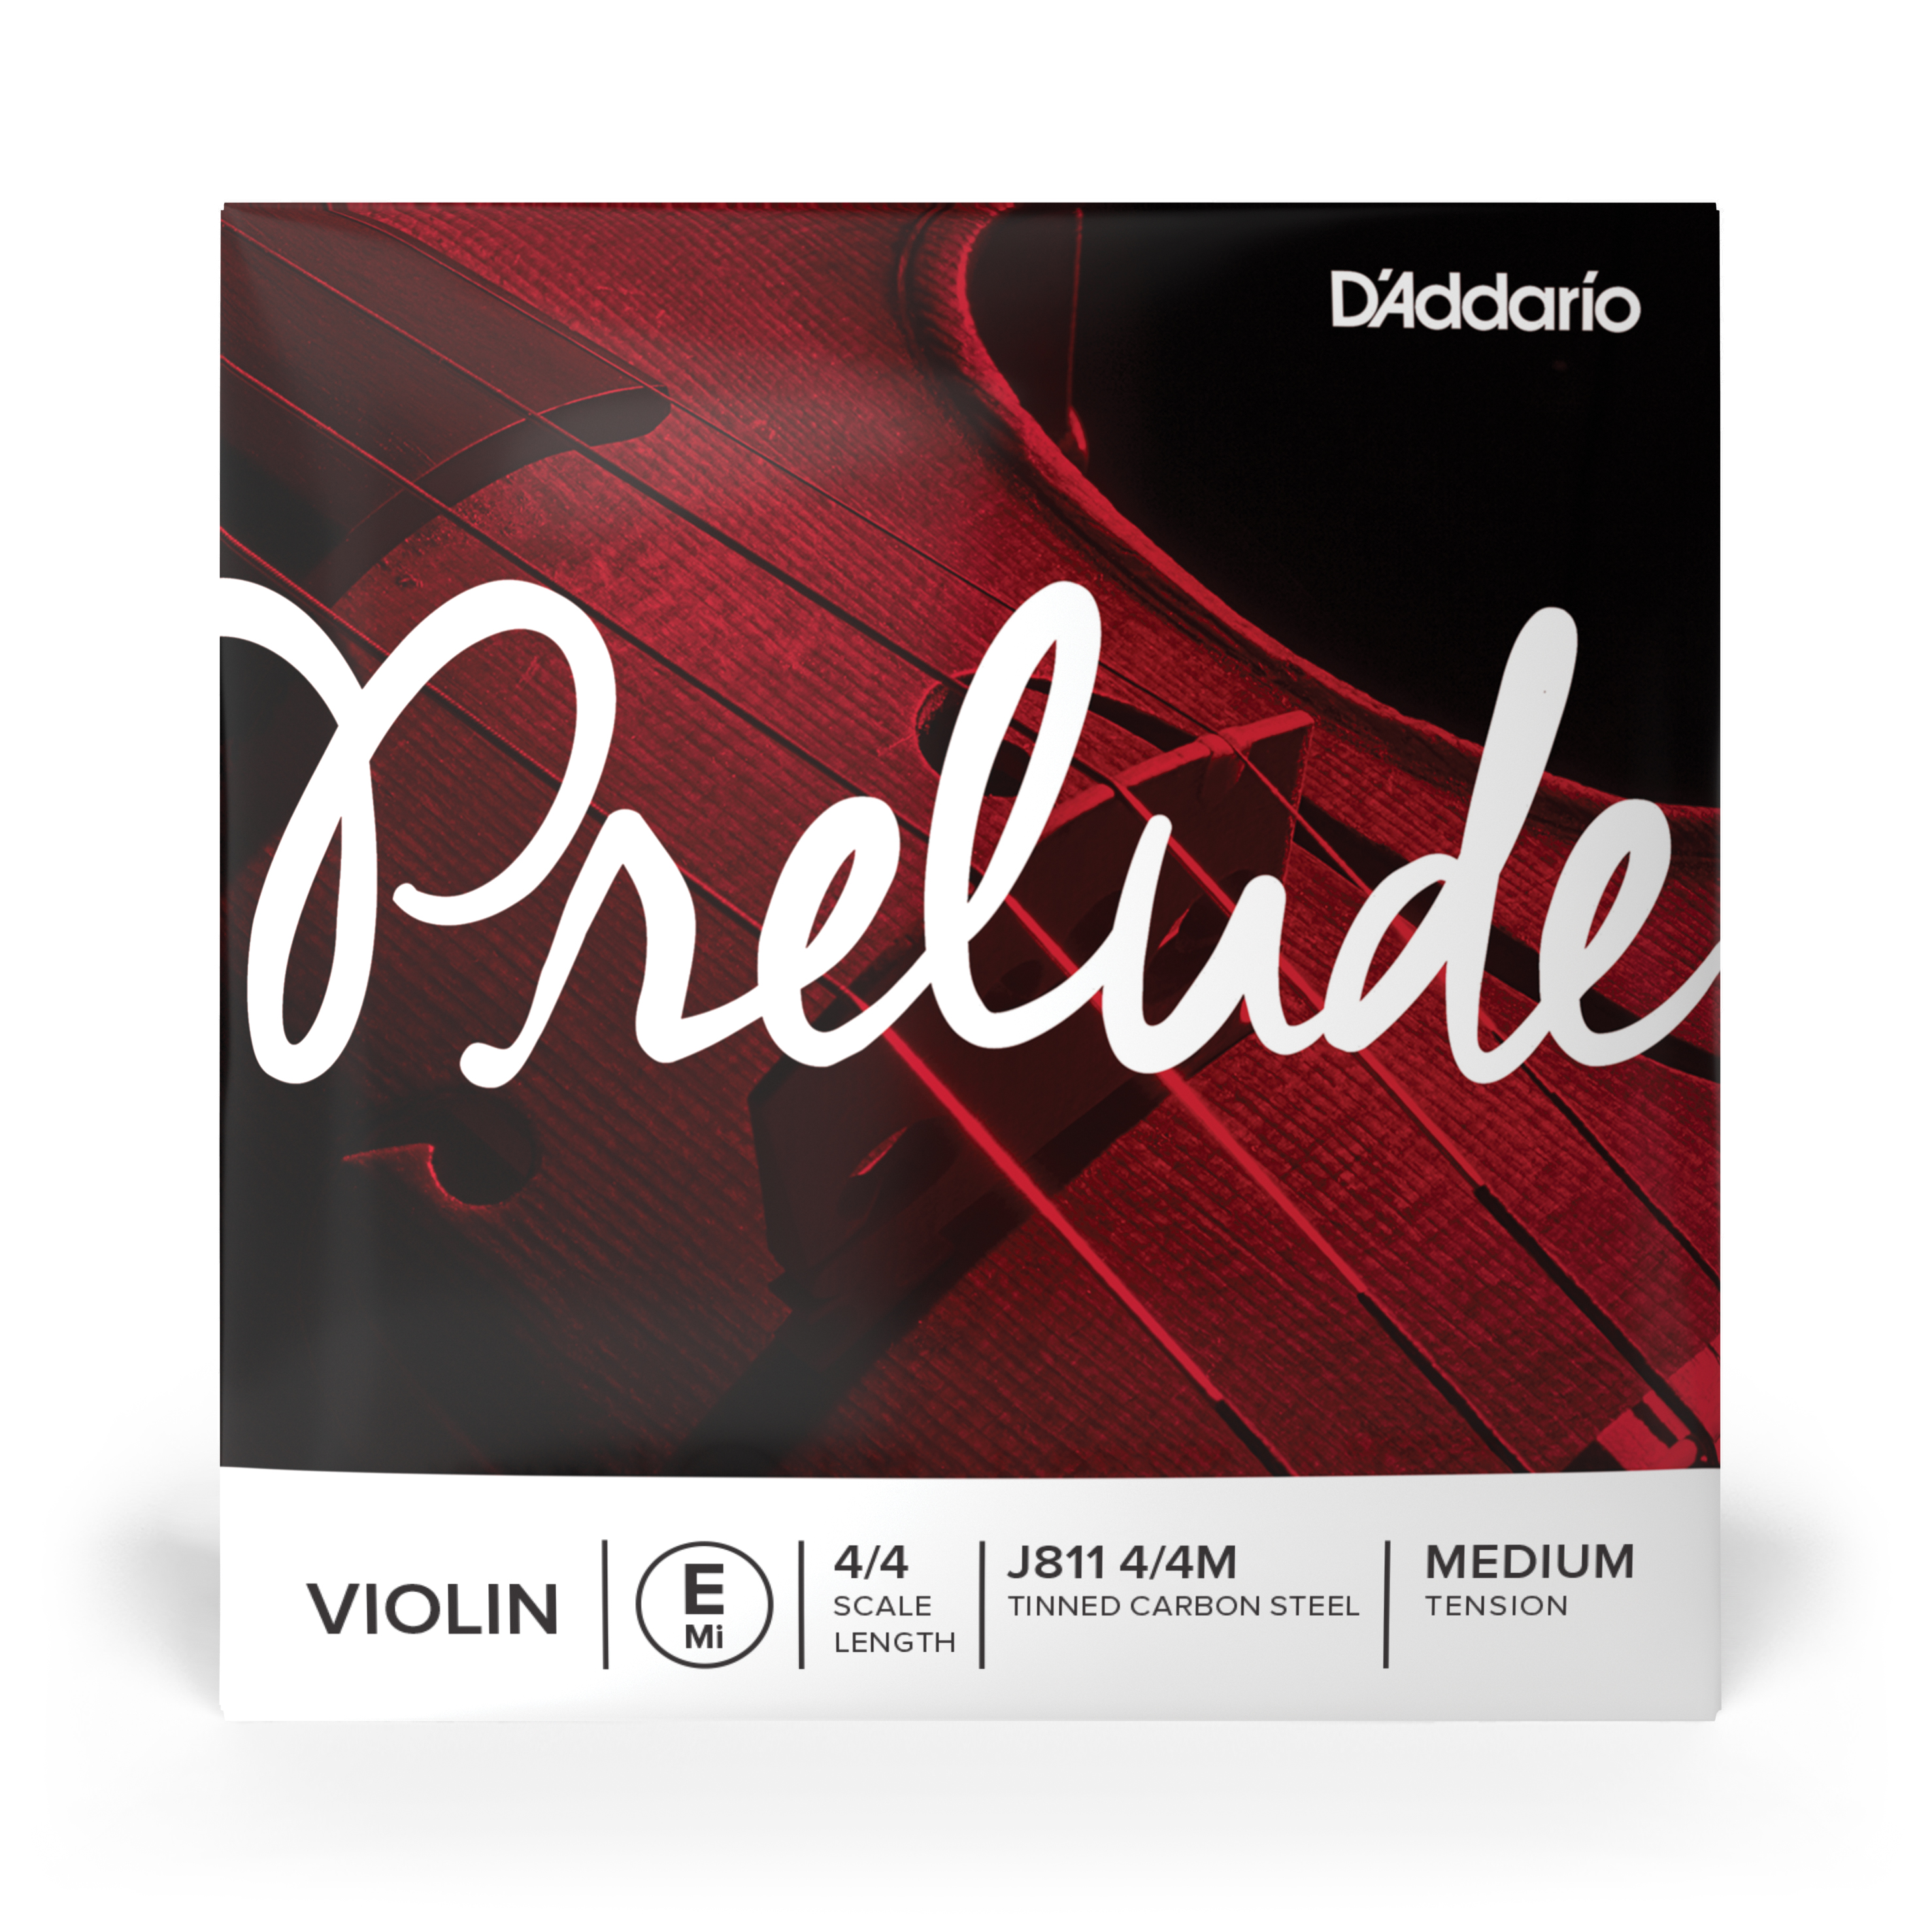 Daddario orchestral it J811 4/4m corda singola mi d'addario prelude per violino, scala 4/4, tensione media